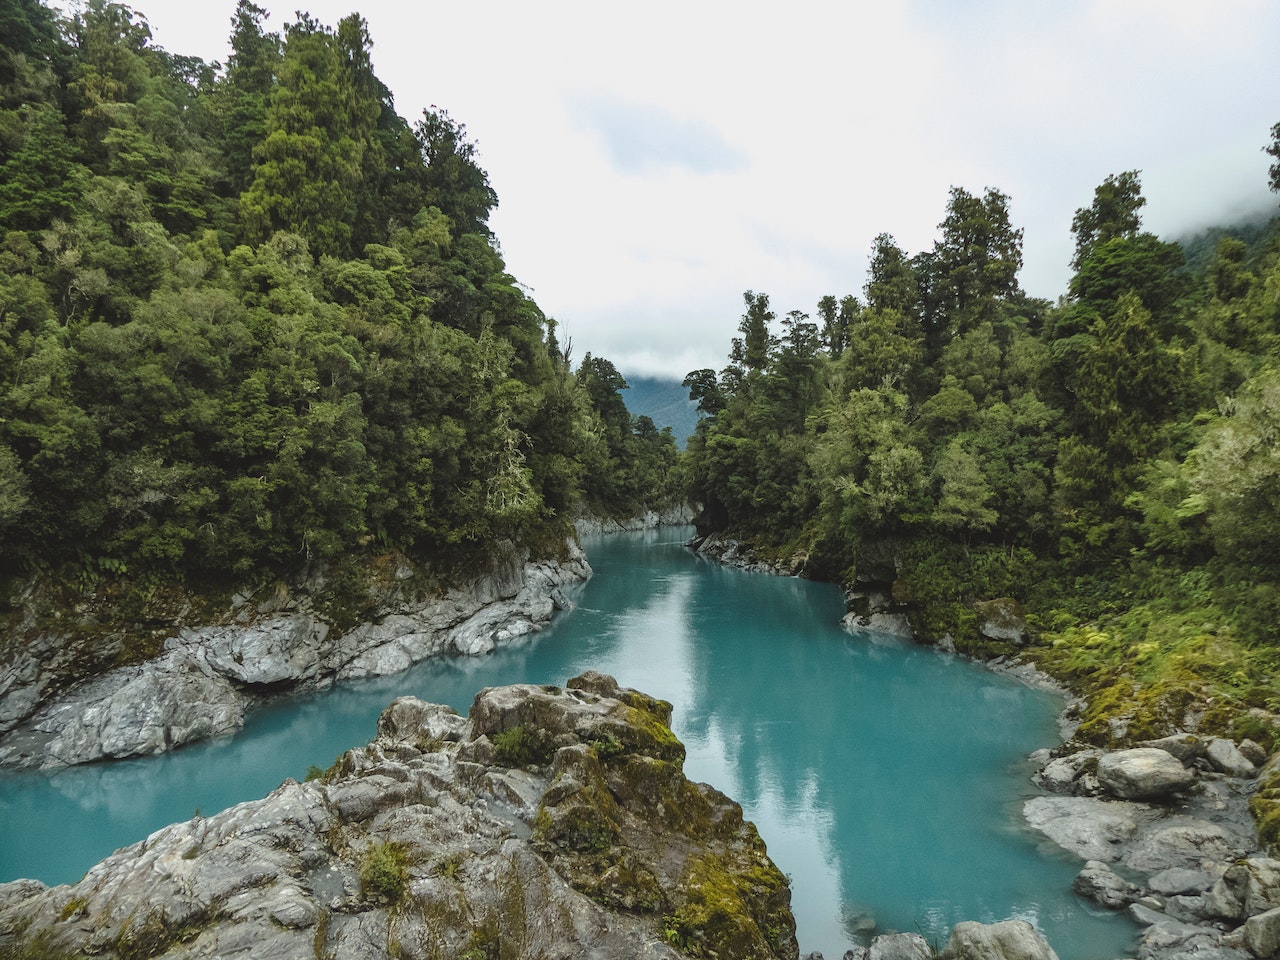 Adventurous Activities In New Zealand - Explore The Thrills Of Outdoor Adventure